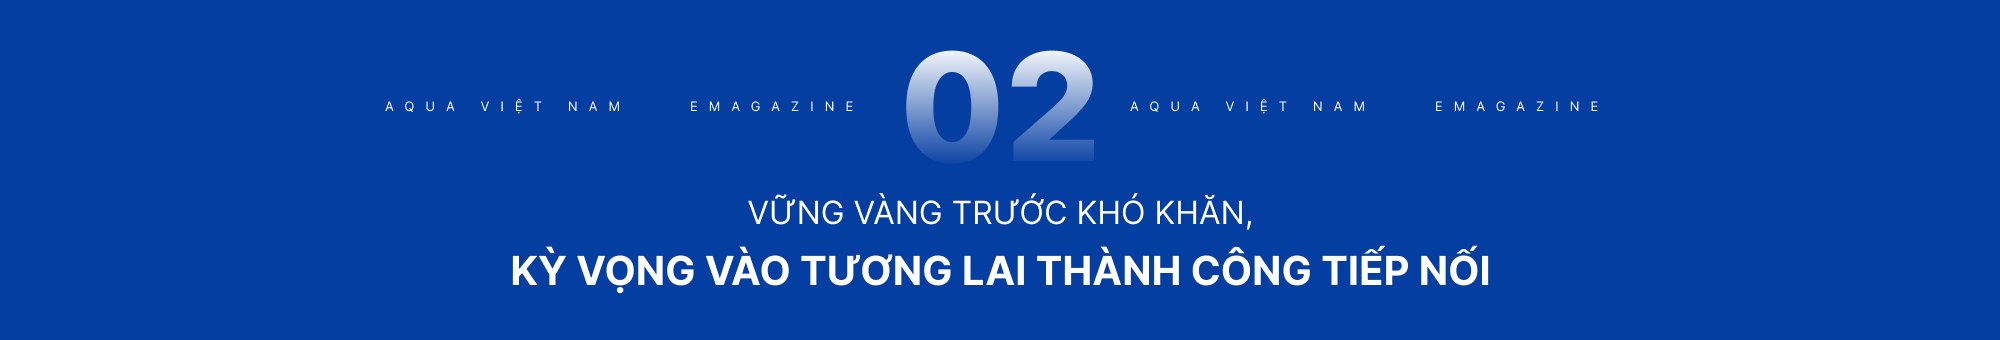 AQUA Việt Nam - Hành trình 26 năm cải tiến công nghệ khơi nguồn cảm hứng sống - Ảnh 11.